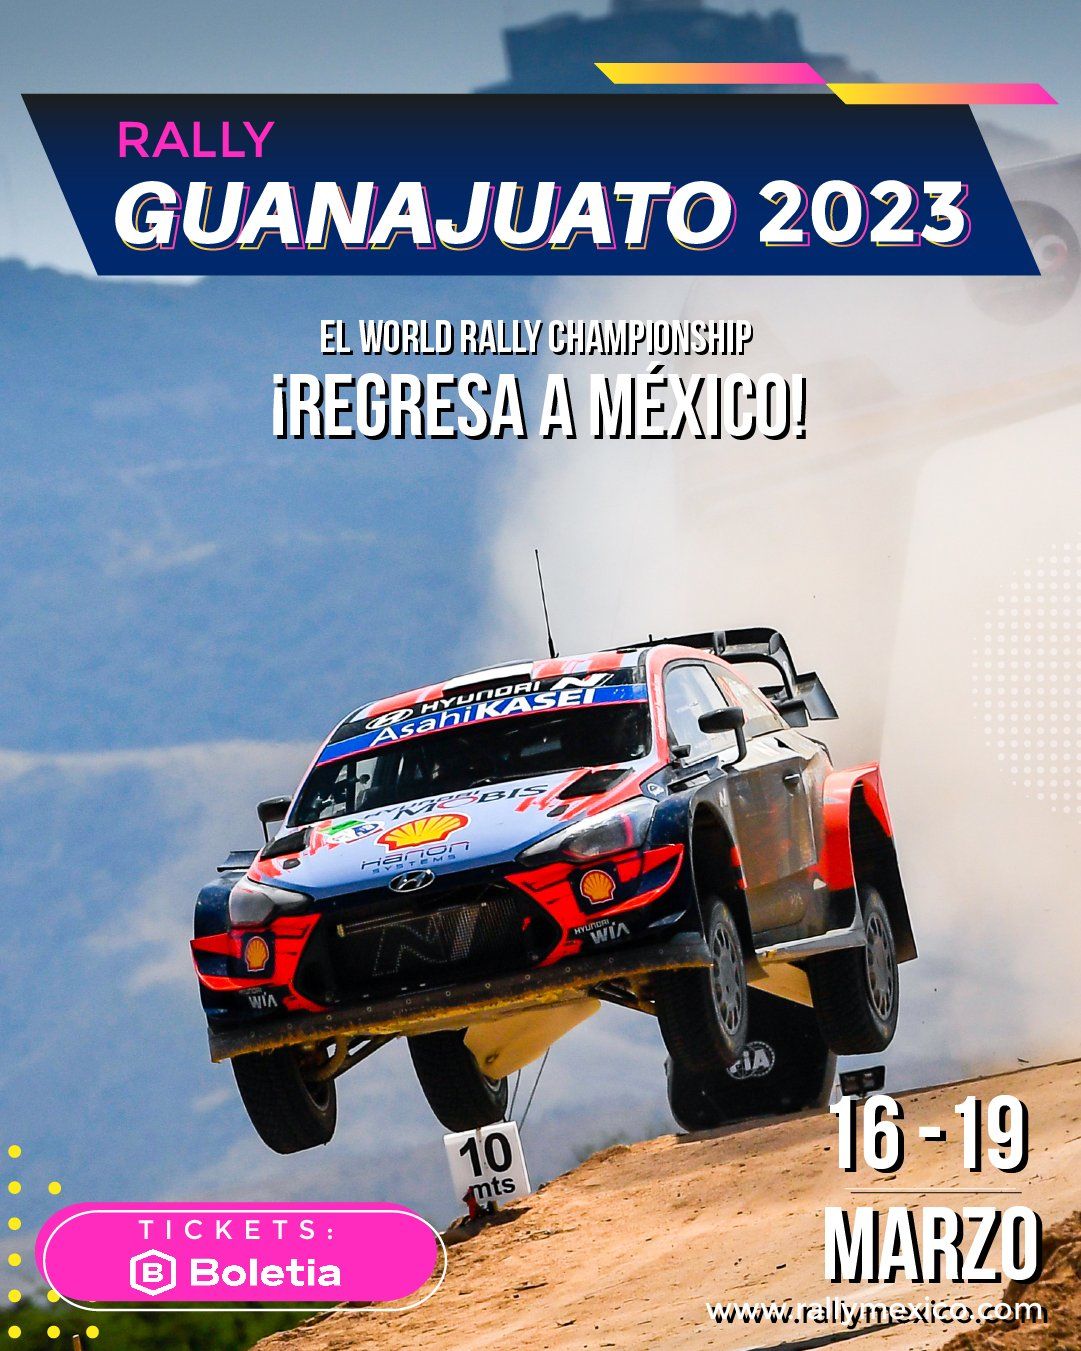 Marzo será el mes donde el Rally llegará a Guanajuato